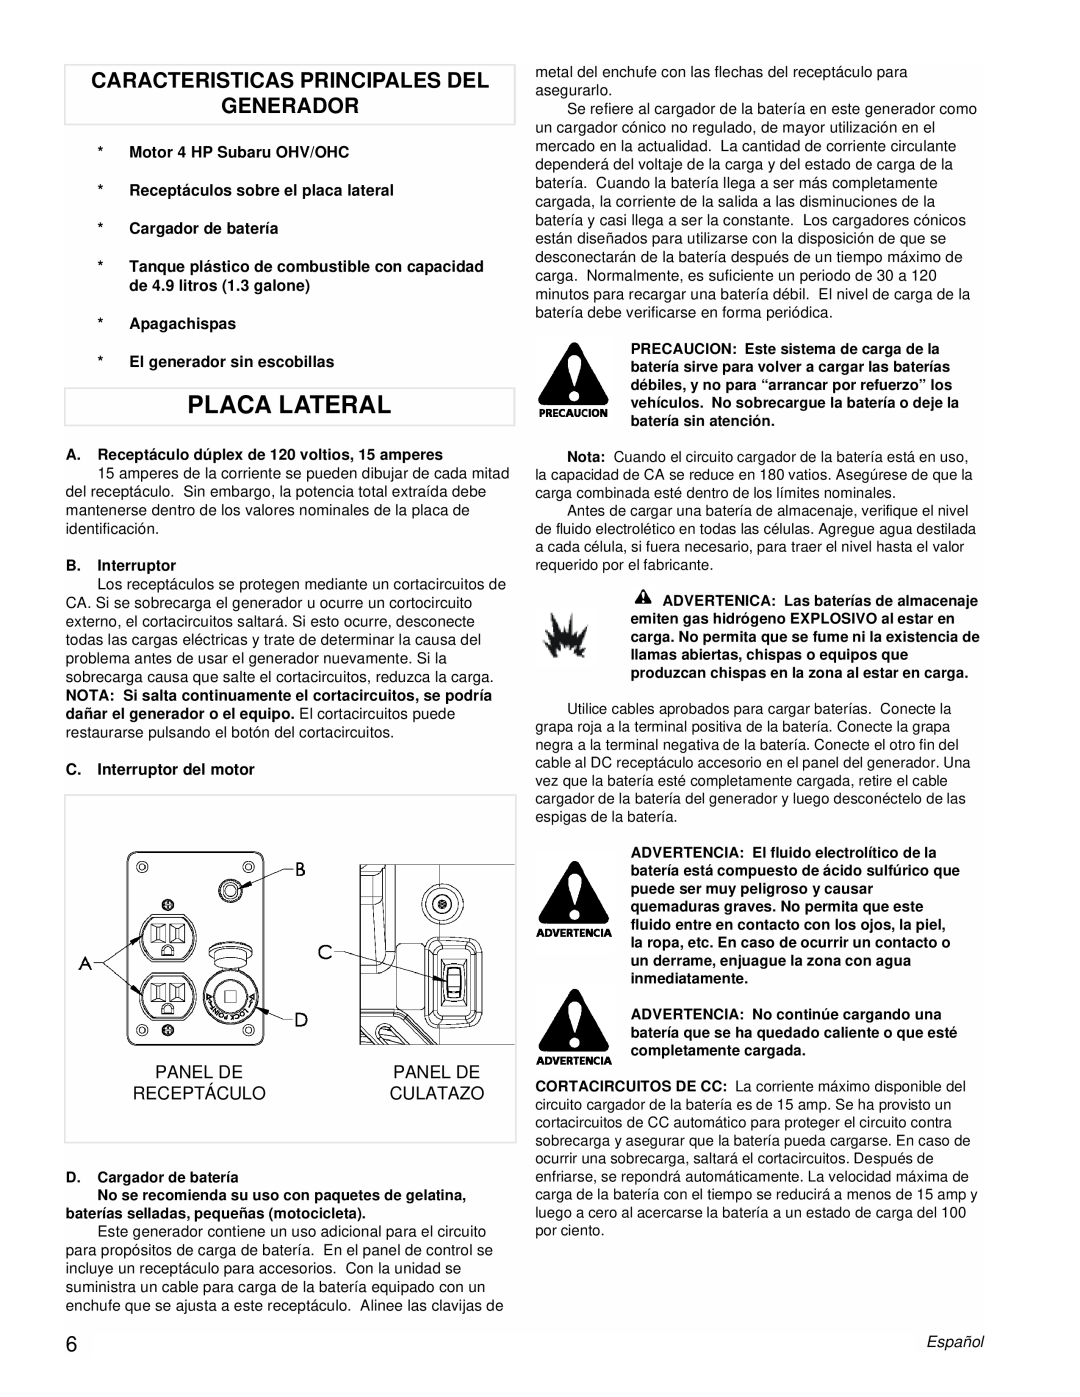 Powermate PM0431800.01 manual Placa Lateral, Caracteristicas Principales Del Generador, Español 